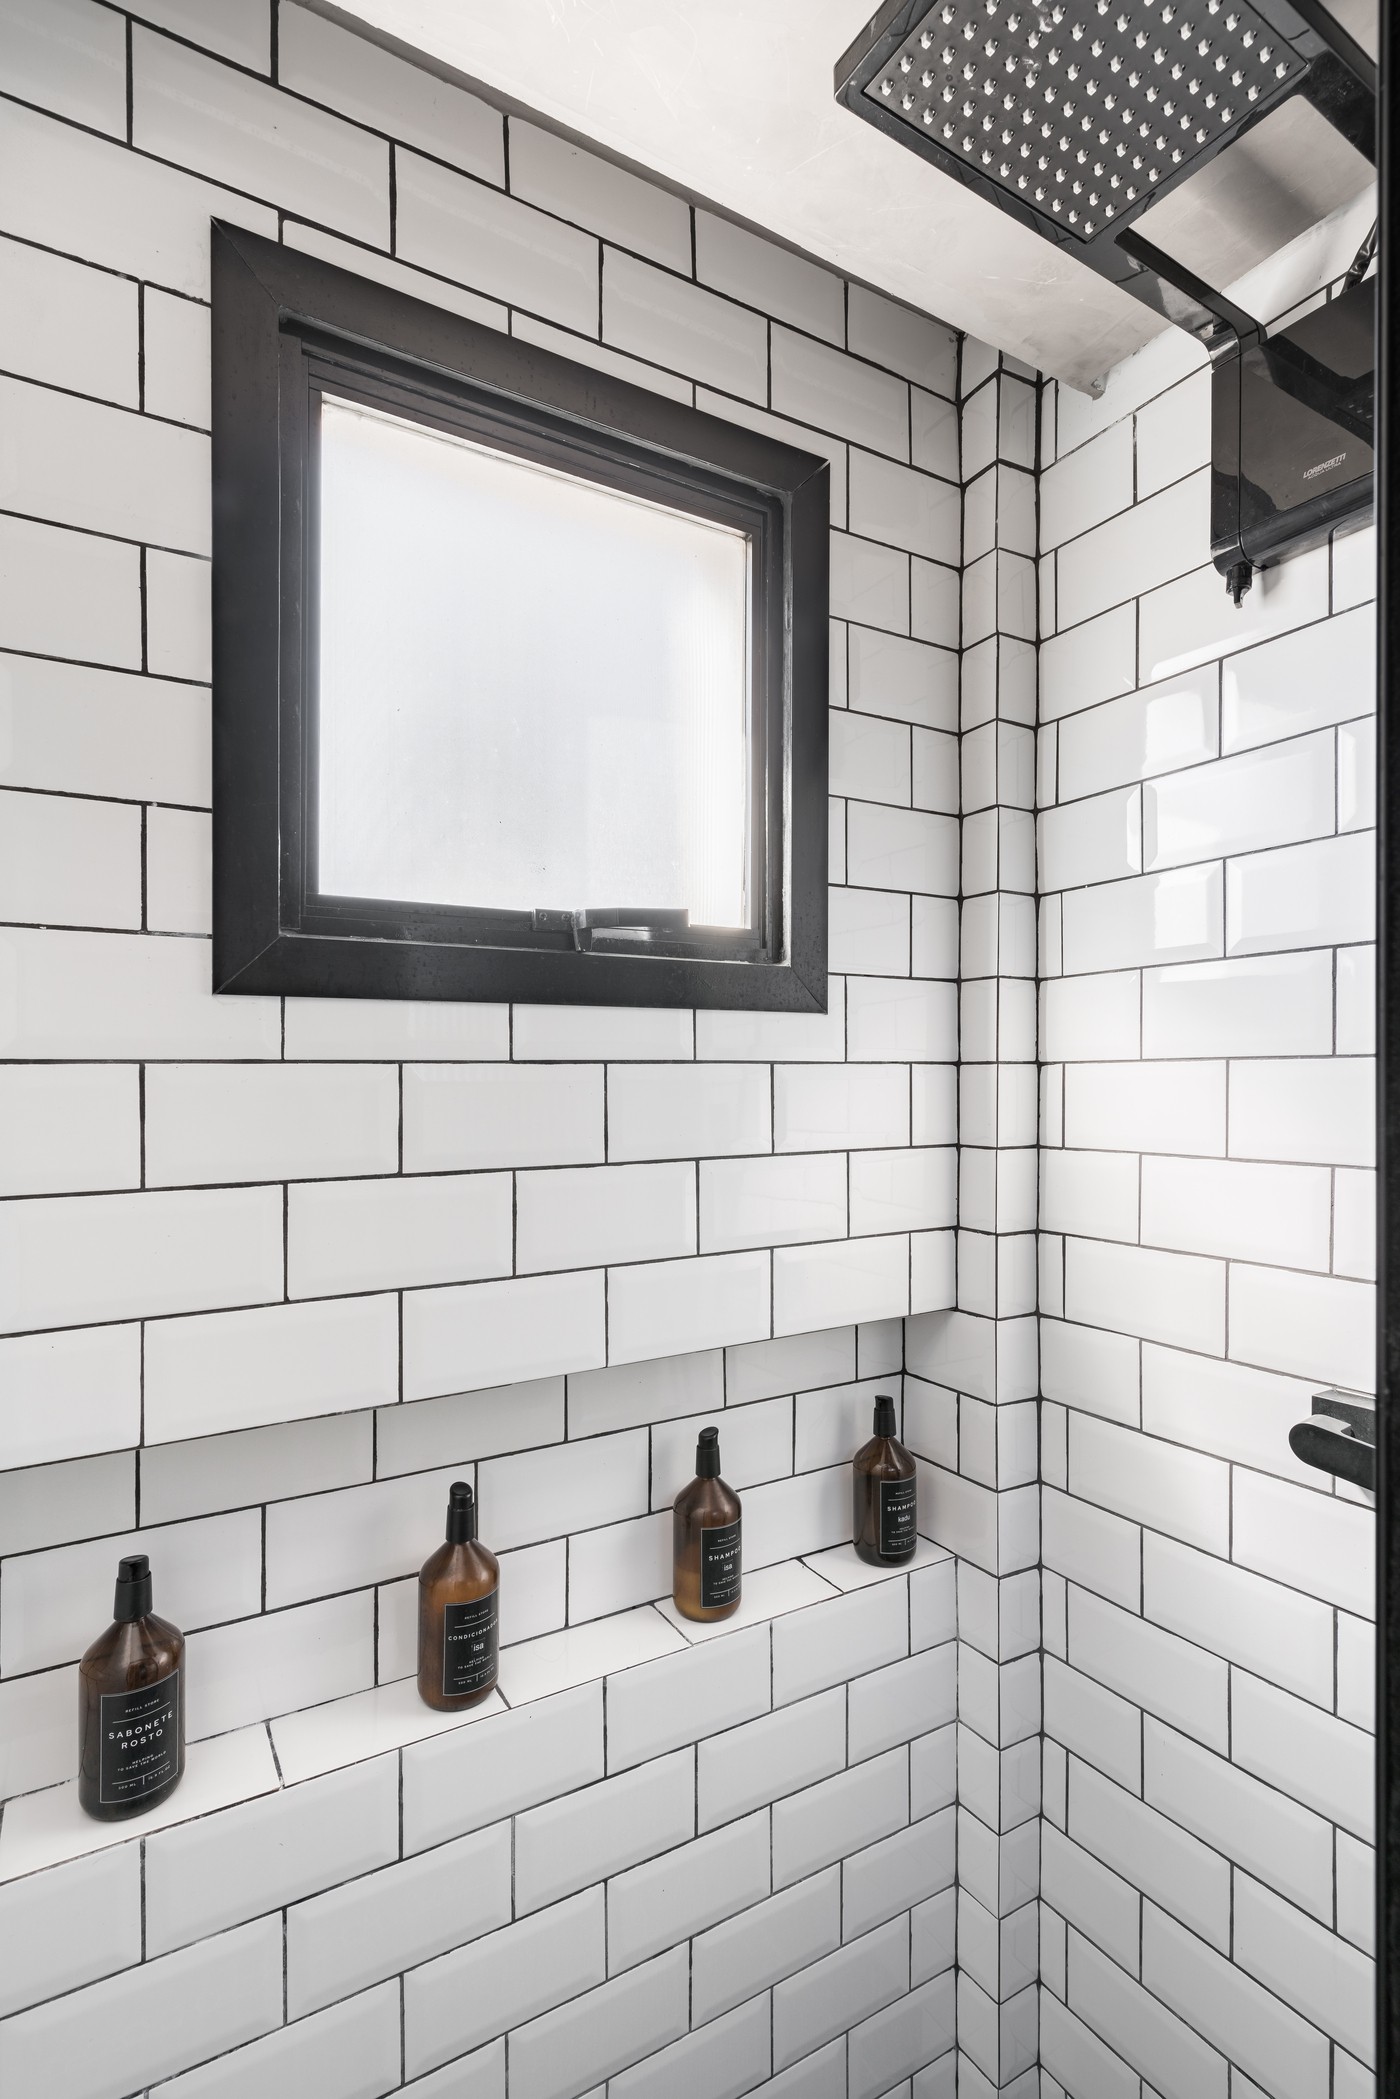 Décor do dia: banheiro com subway tiles e serralheria (Foto: Kadu Lopes)